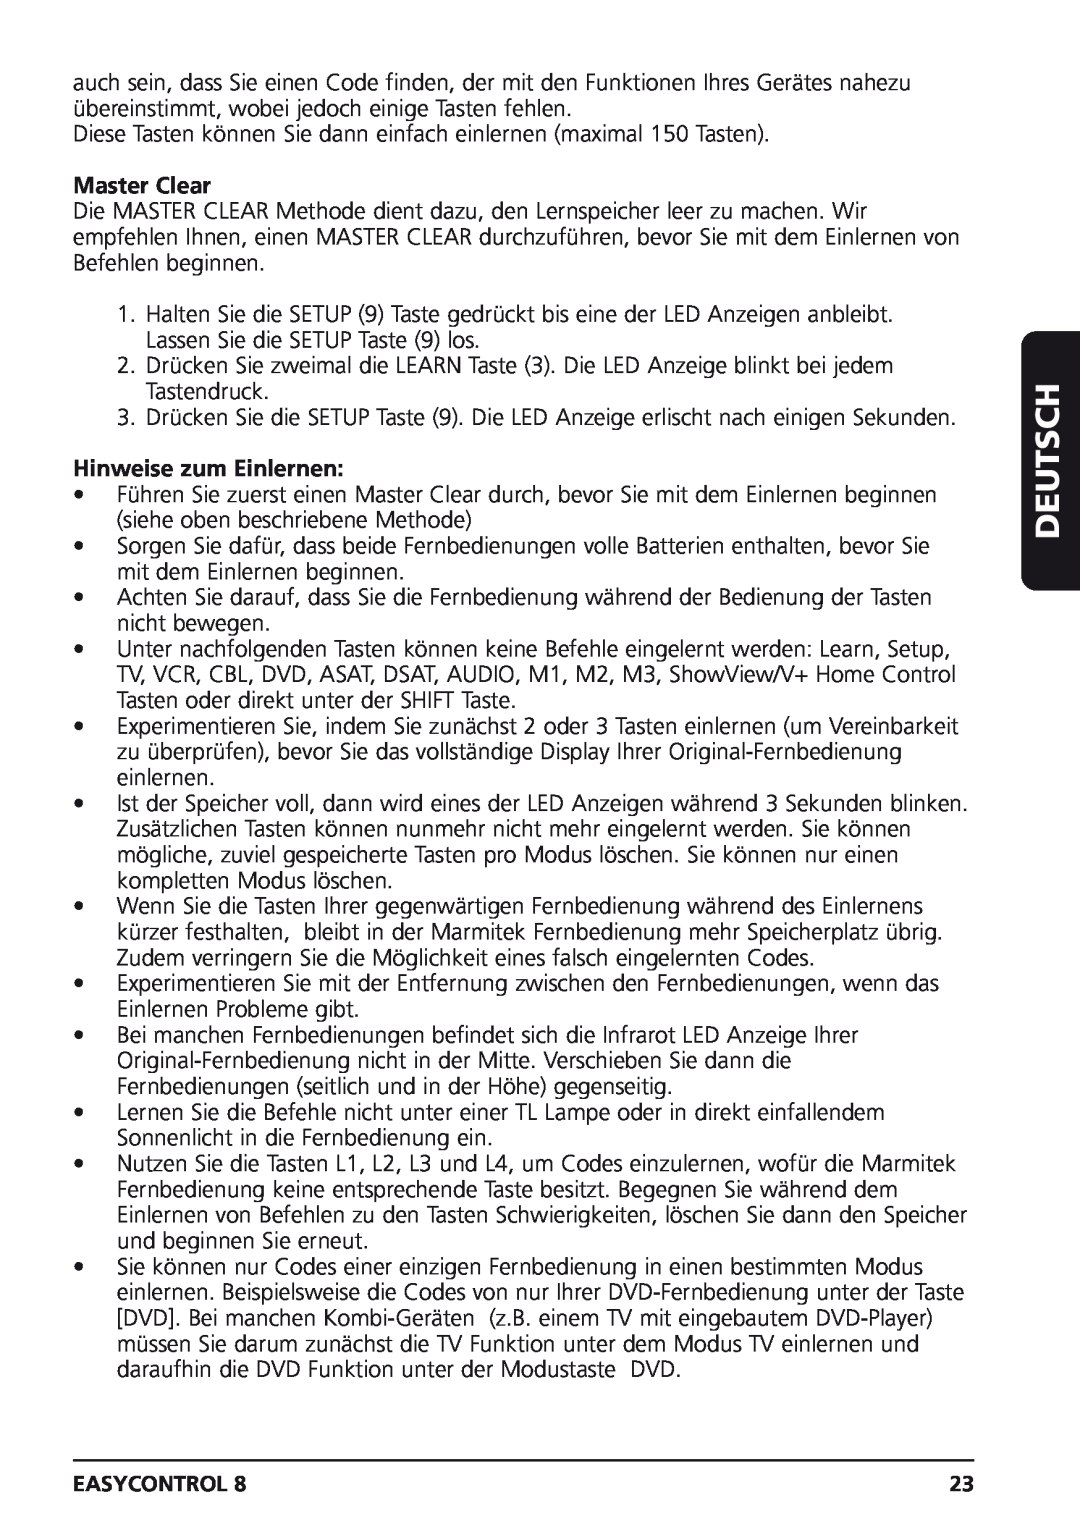 Marmitek Easycontrol 8 owner manual Master Clear, Hinweise zum Einlernen, Deutsch 